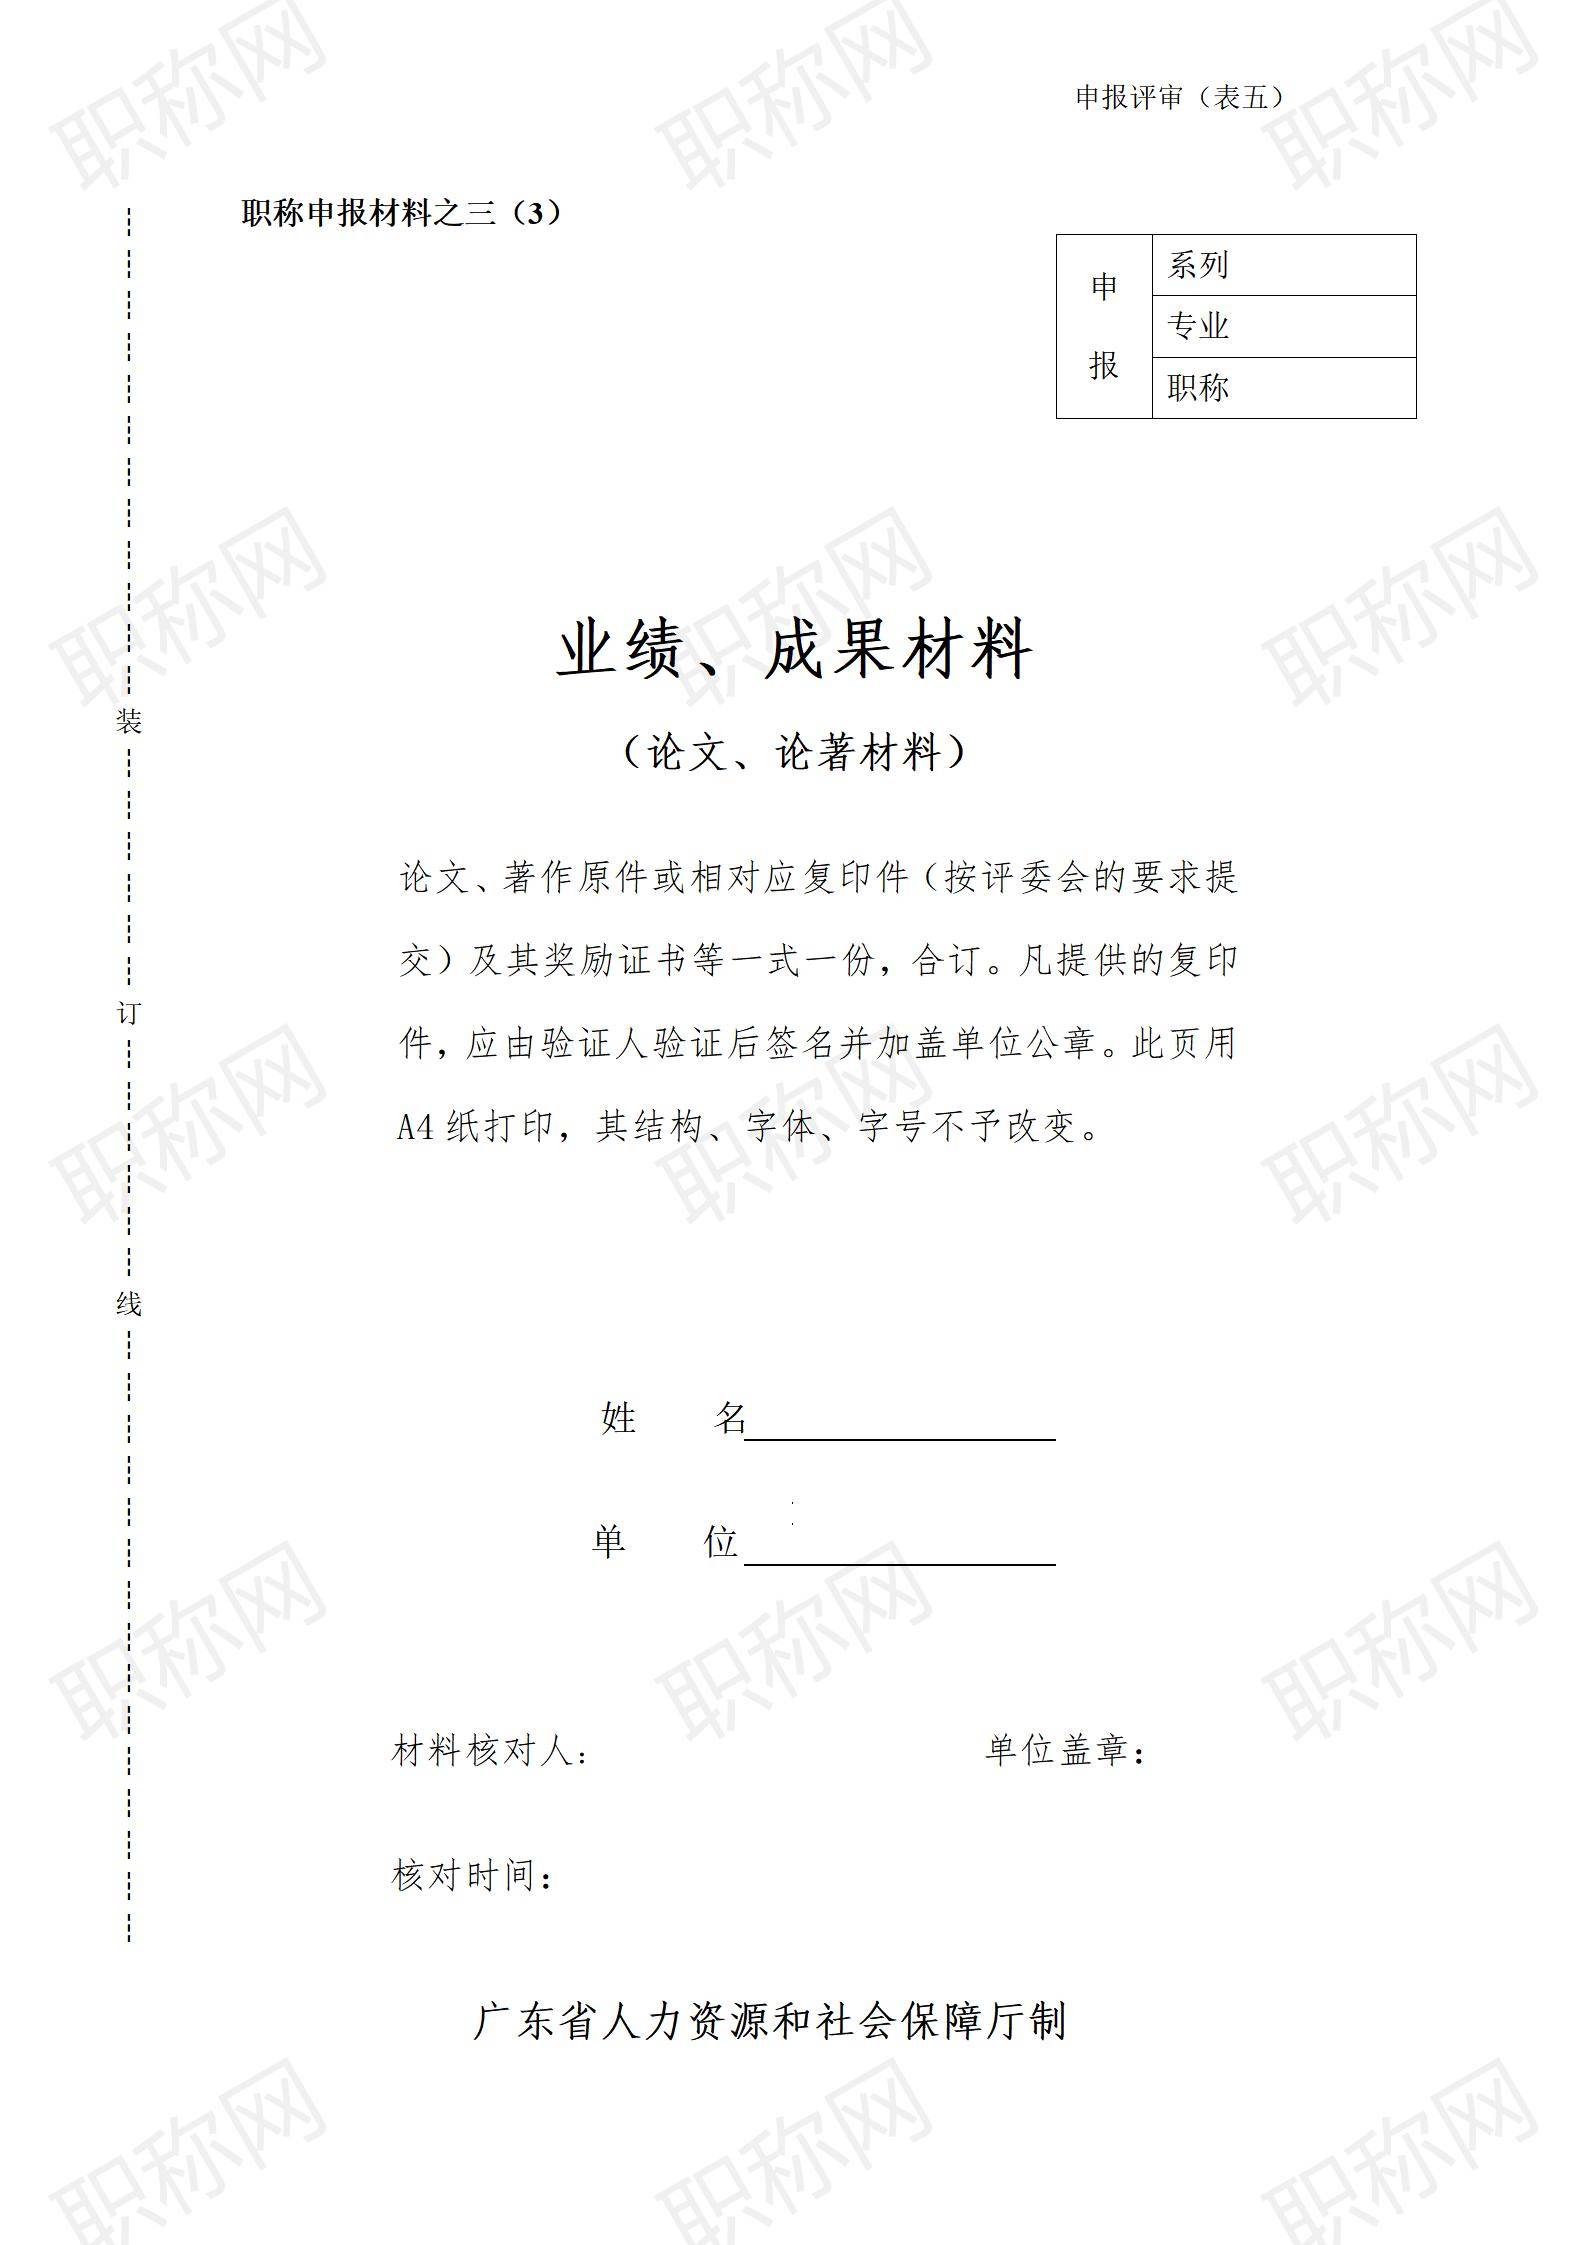 广东省职称评审业绩及成果材料填写表_03.jpg